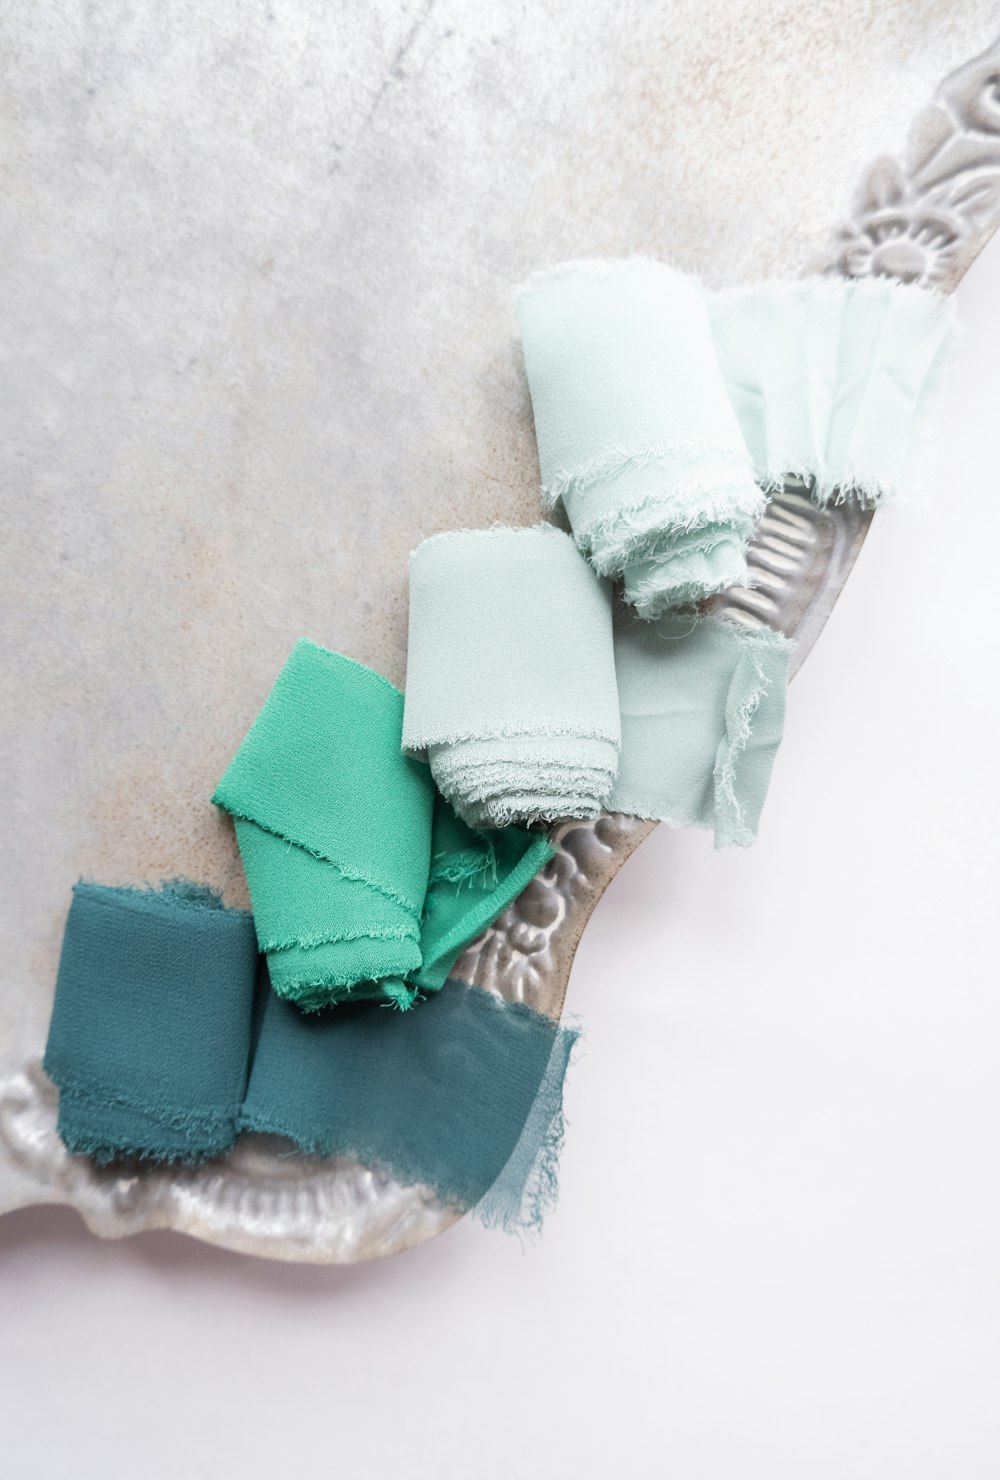 white and green textile on white textile